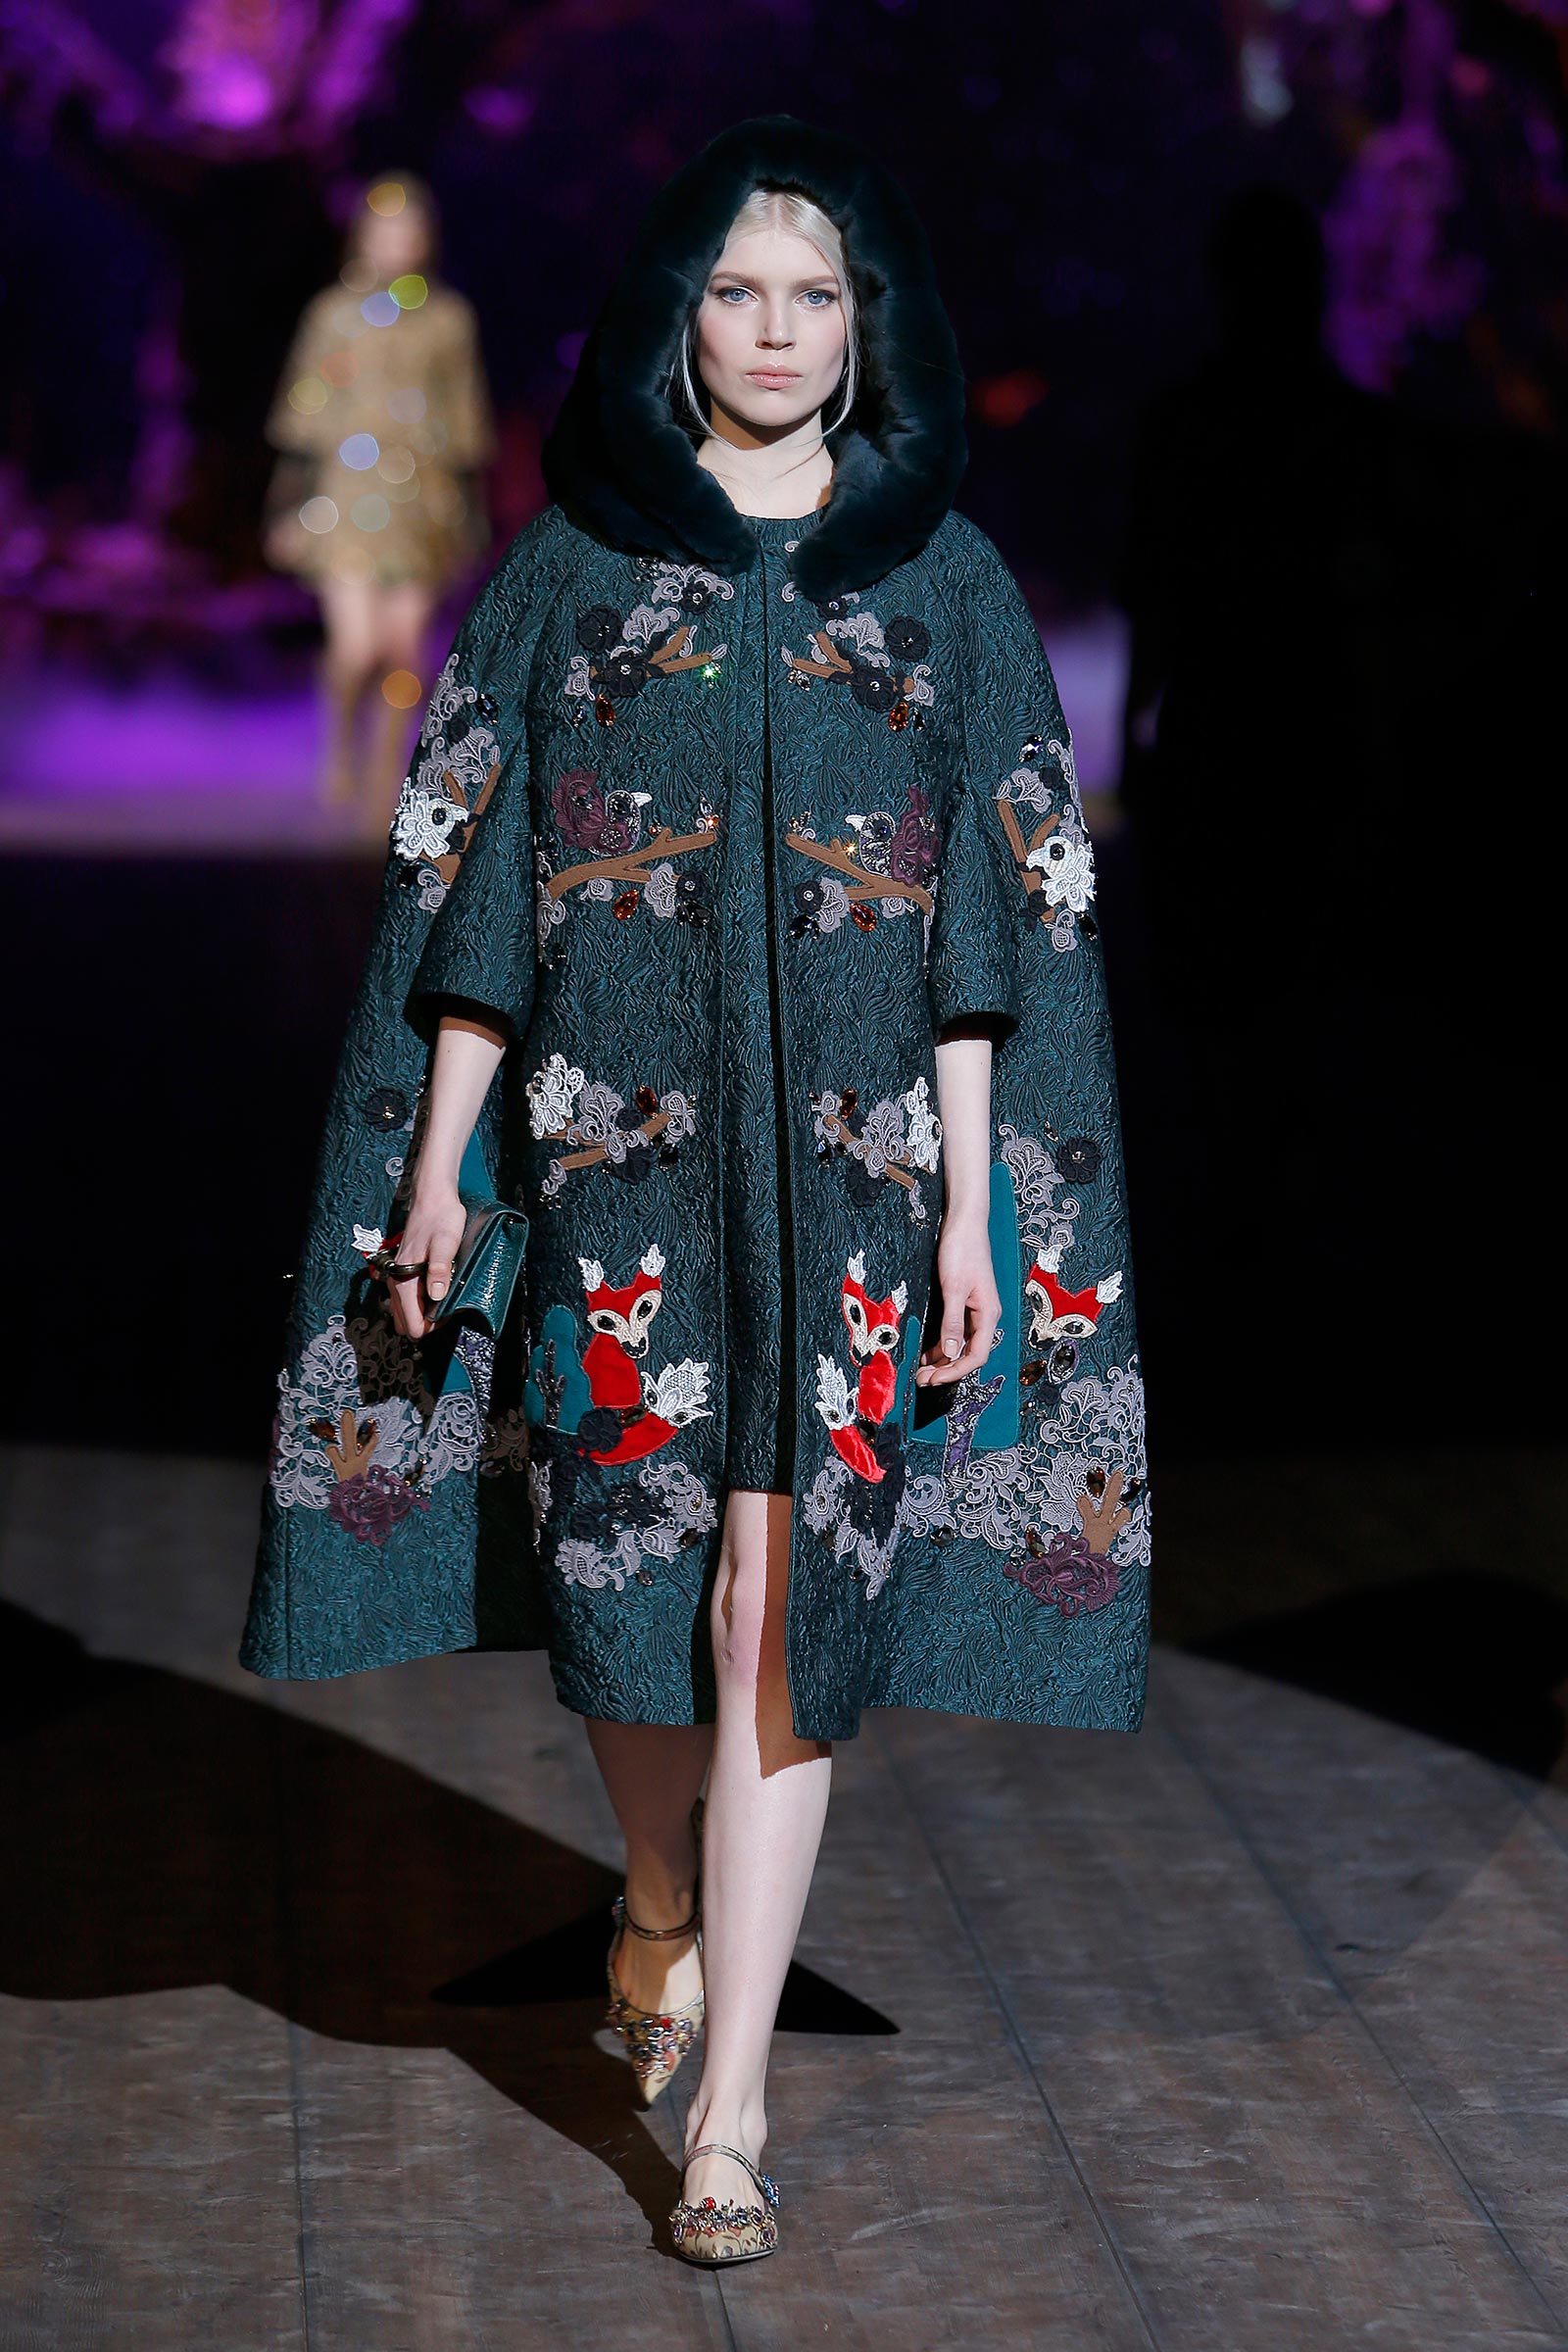 El cuento de hadas de Dolce and Gabbana: Colección invierno 2015